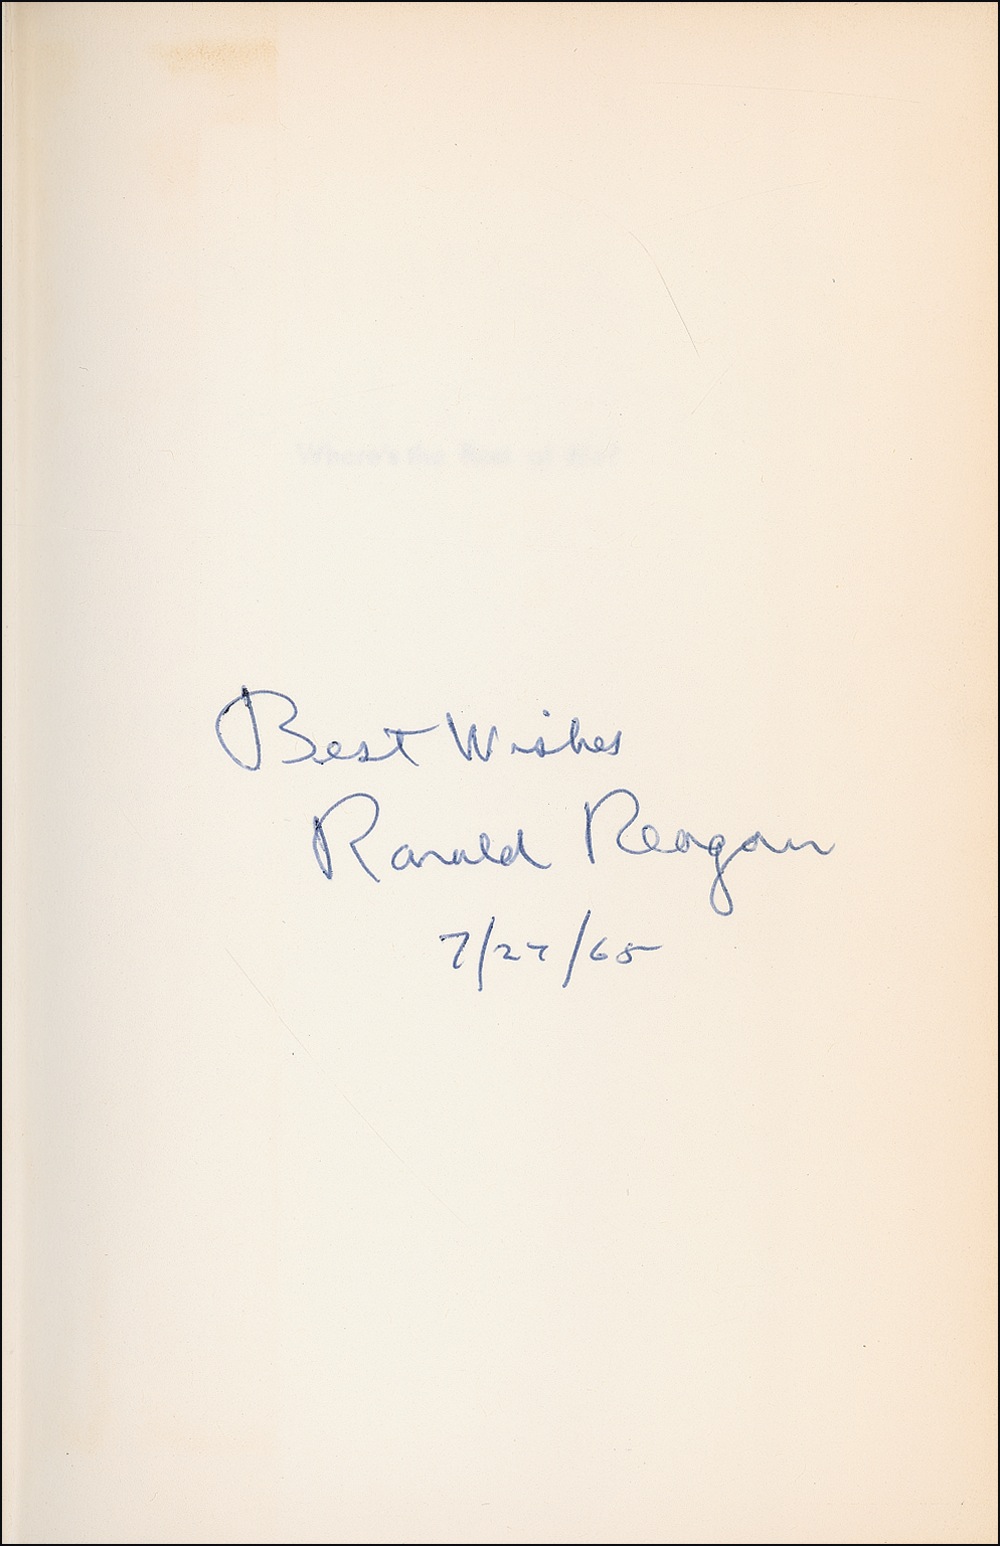 Lot #162 Ronald Reagan